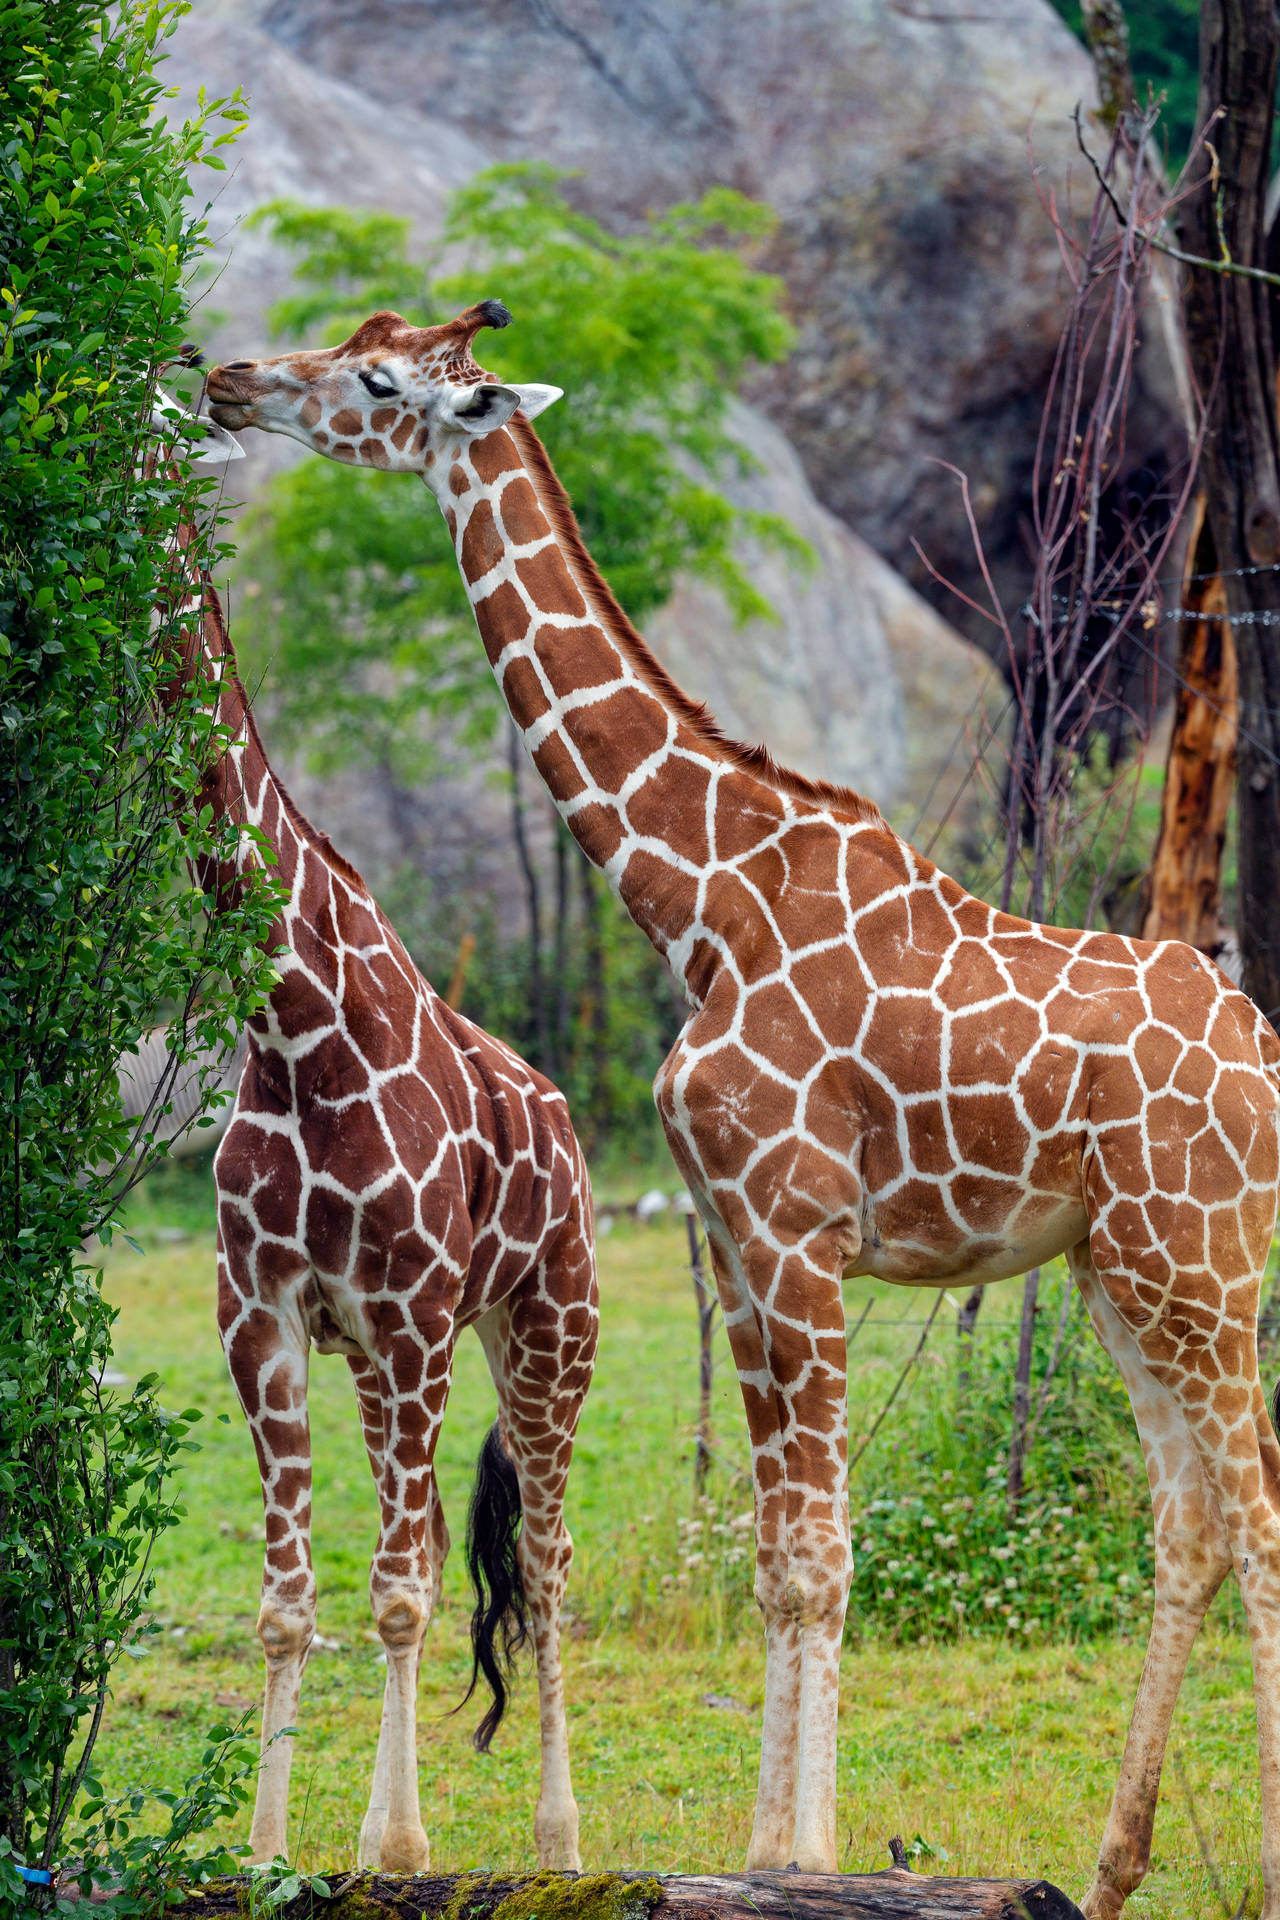 Two Giraffes Eating